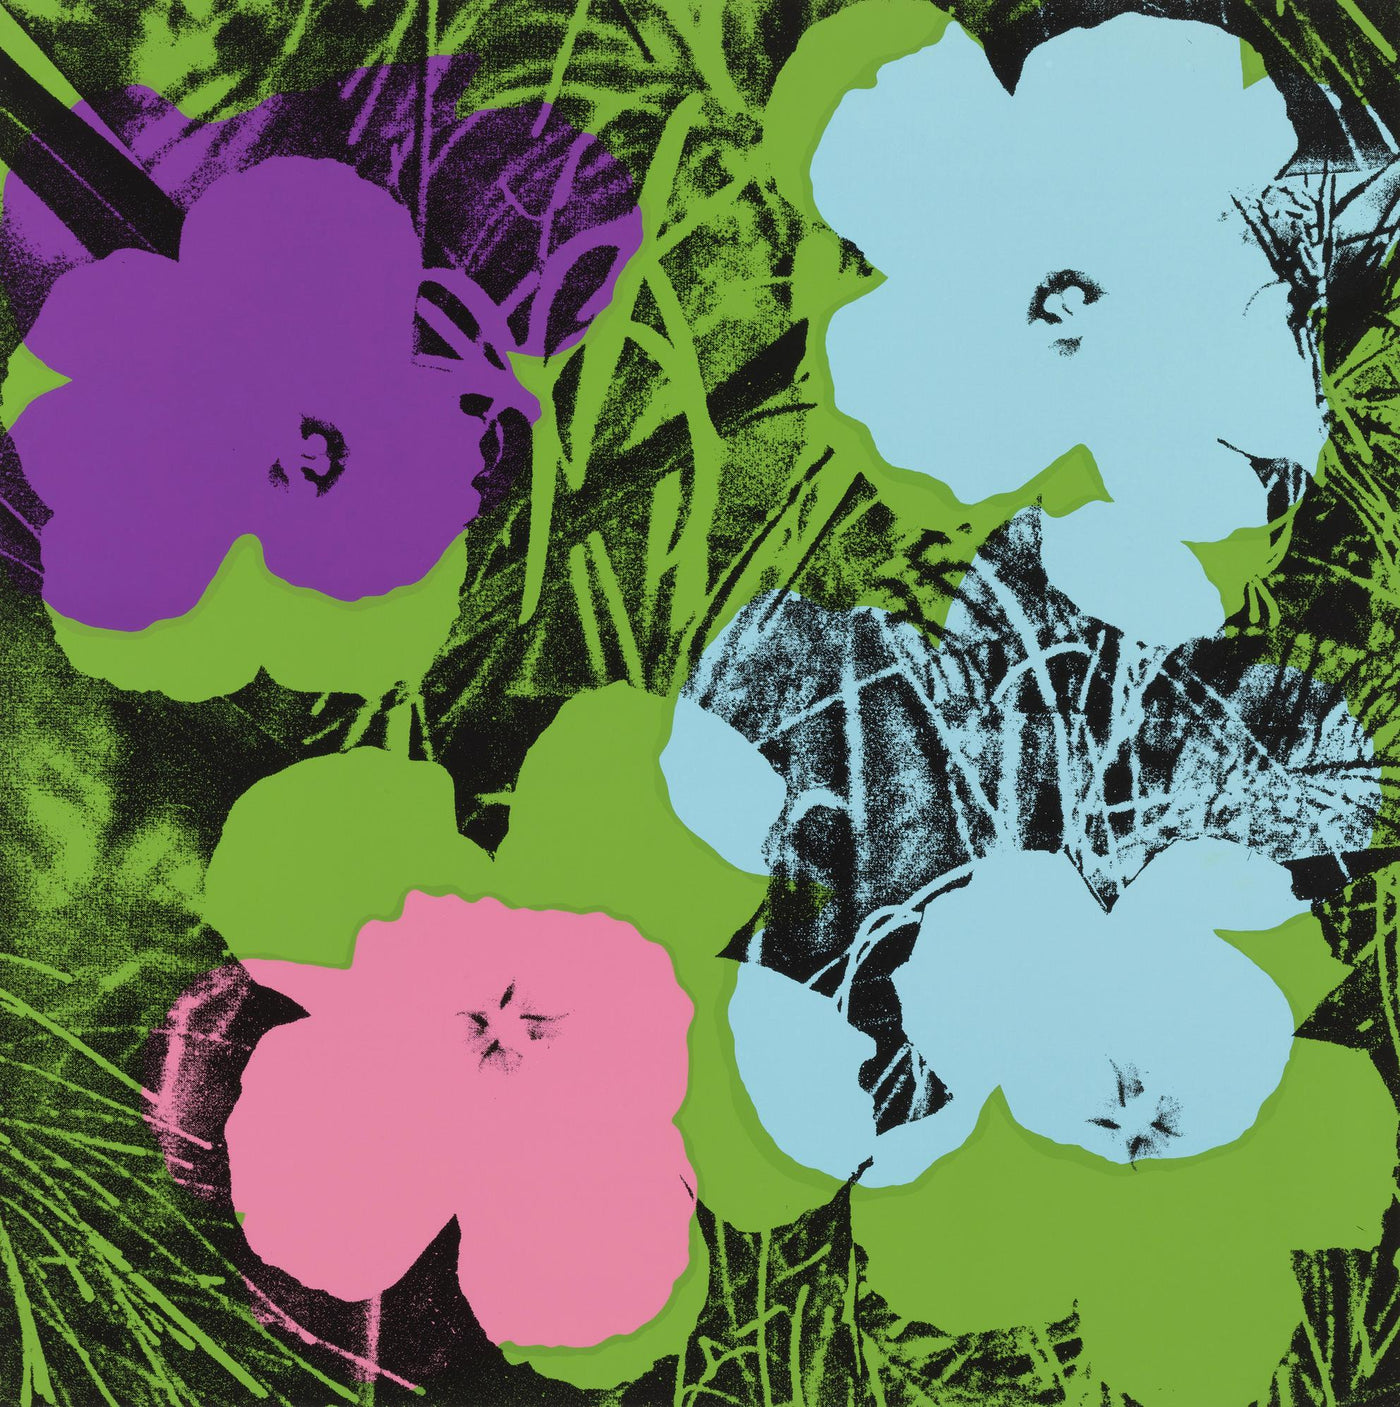 Andy Warhol Flowers (Feldman II.64) 1970